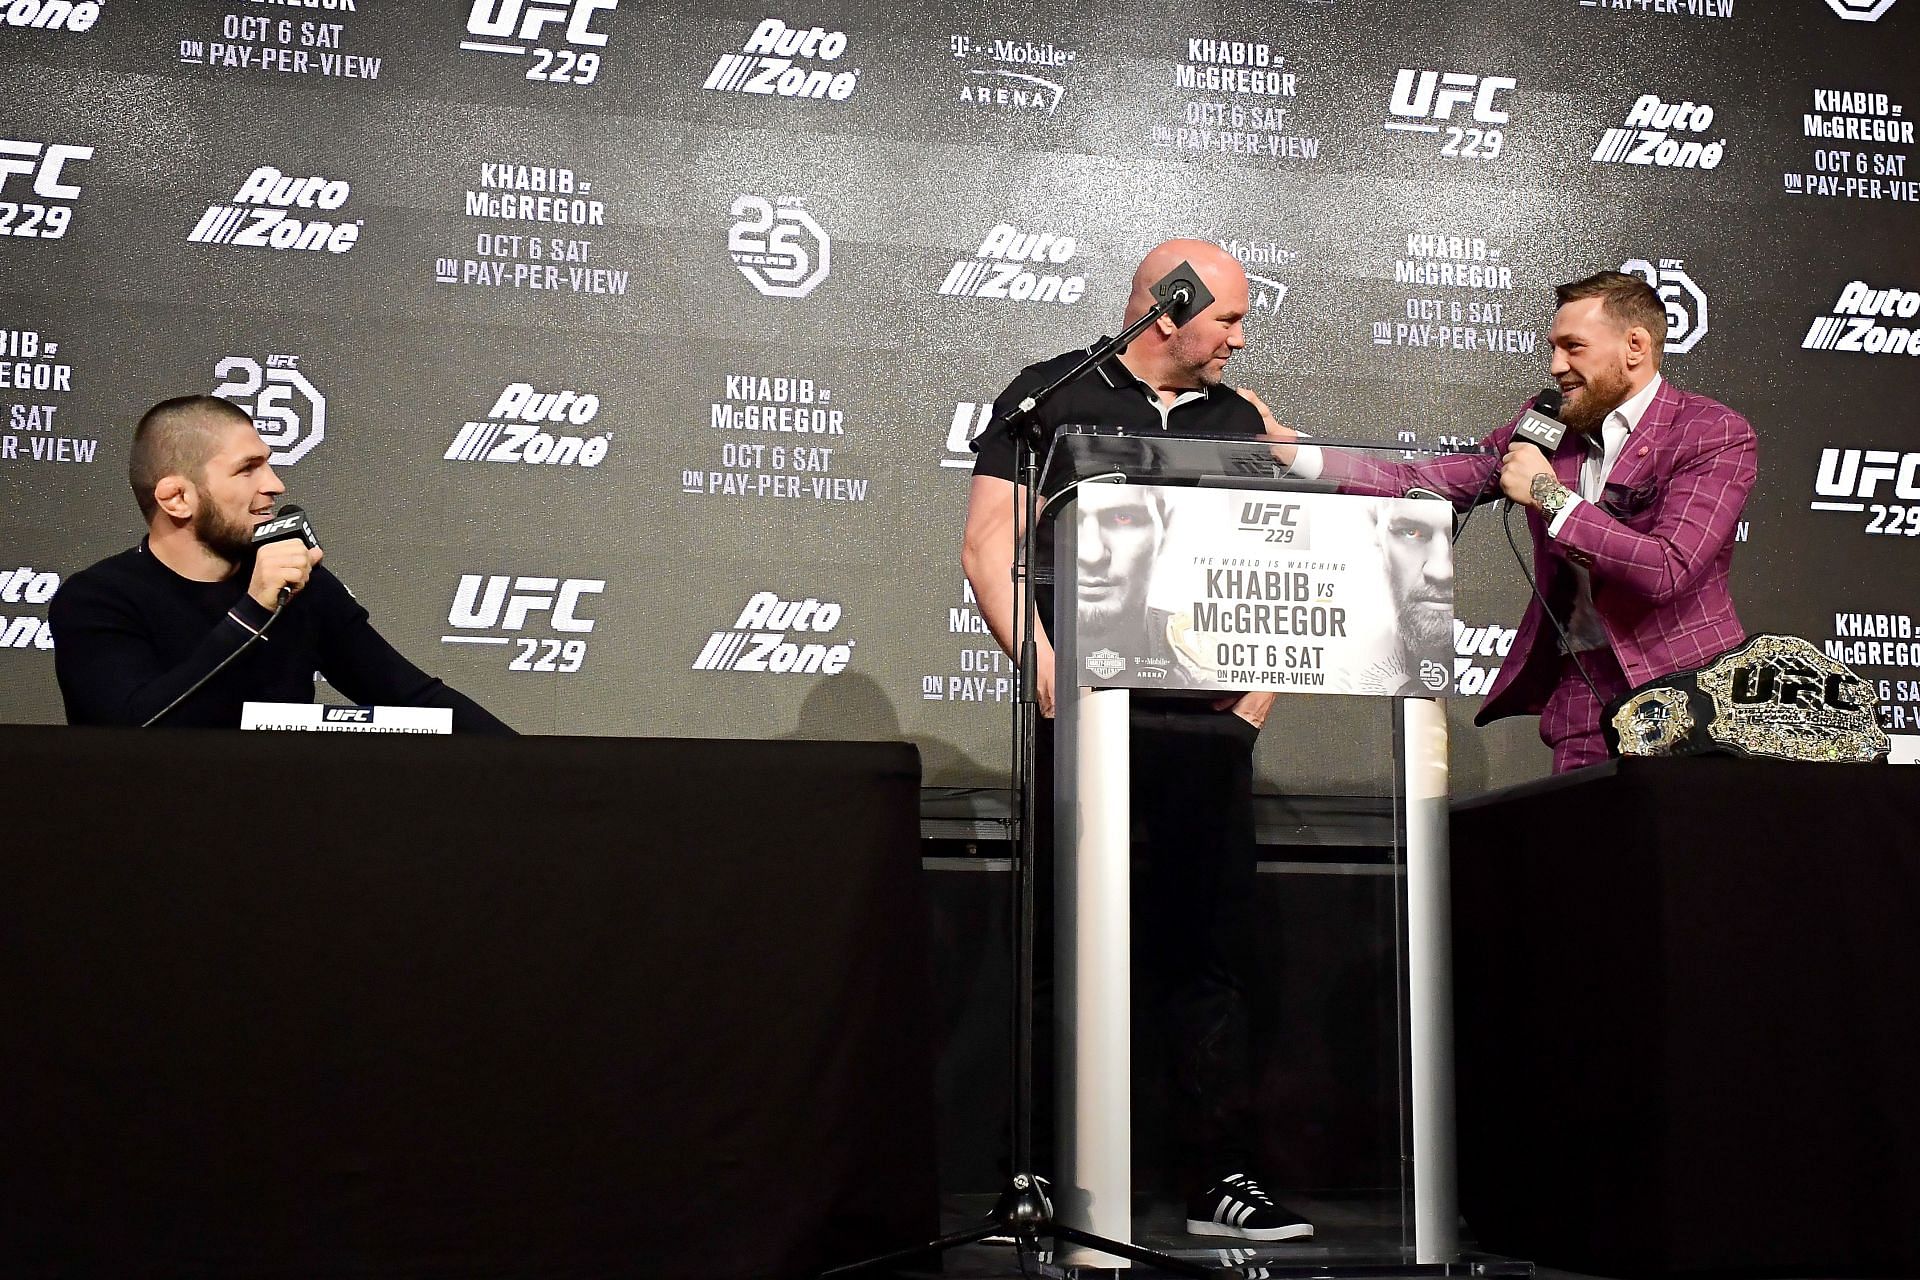 UFC 229: Khabib Nurmagomedov vs. Conor McGregor Press Conference